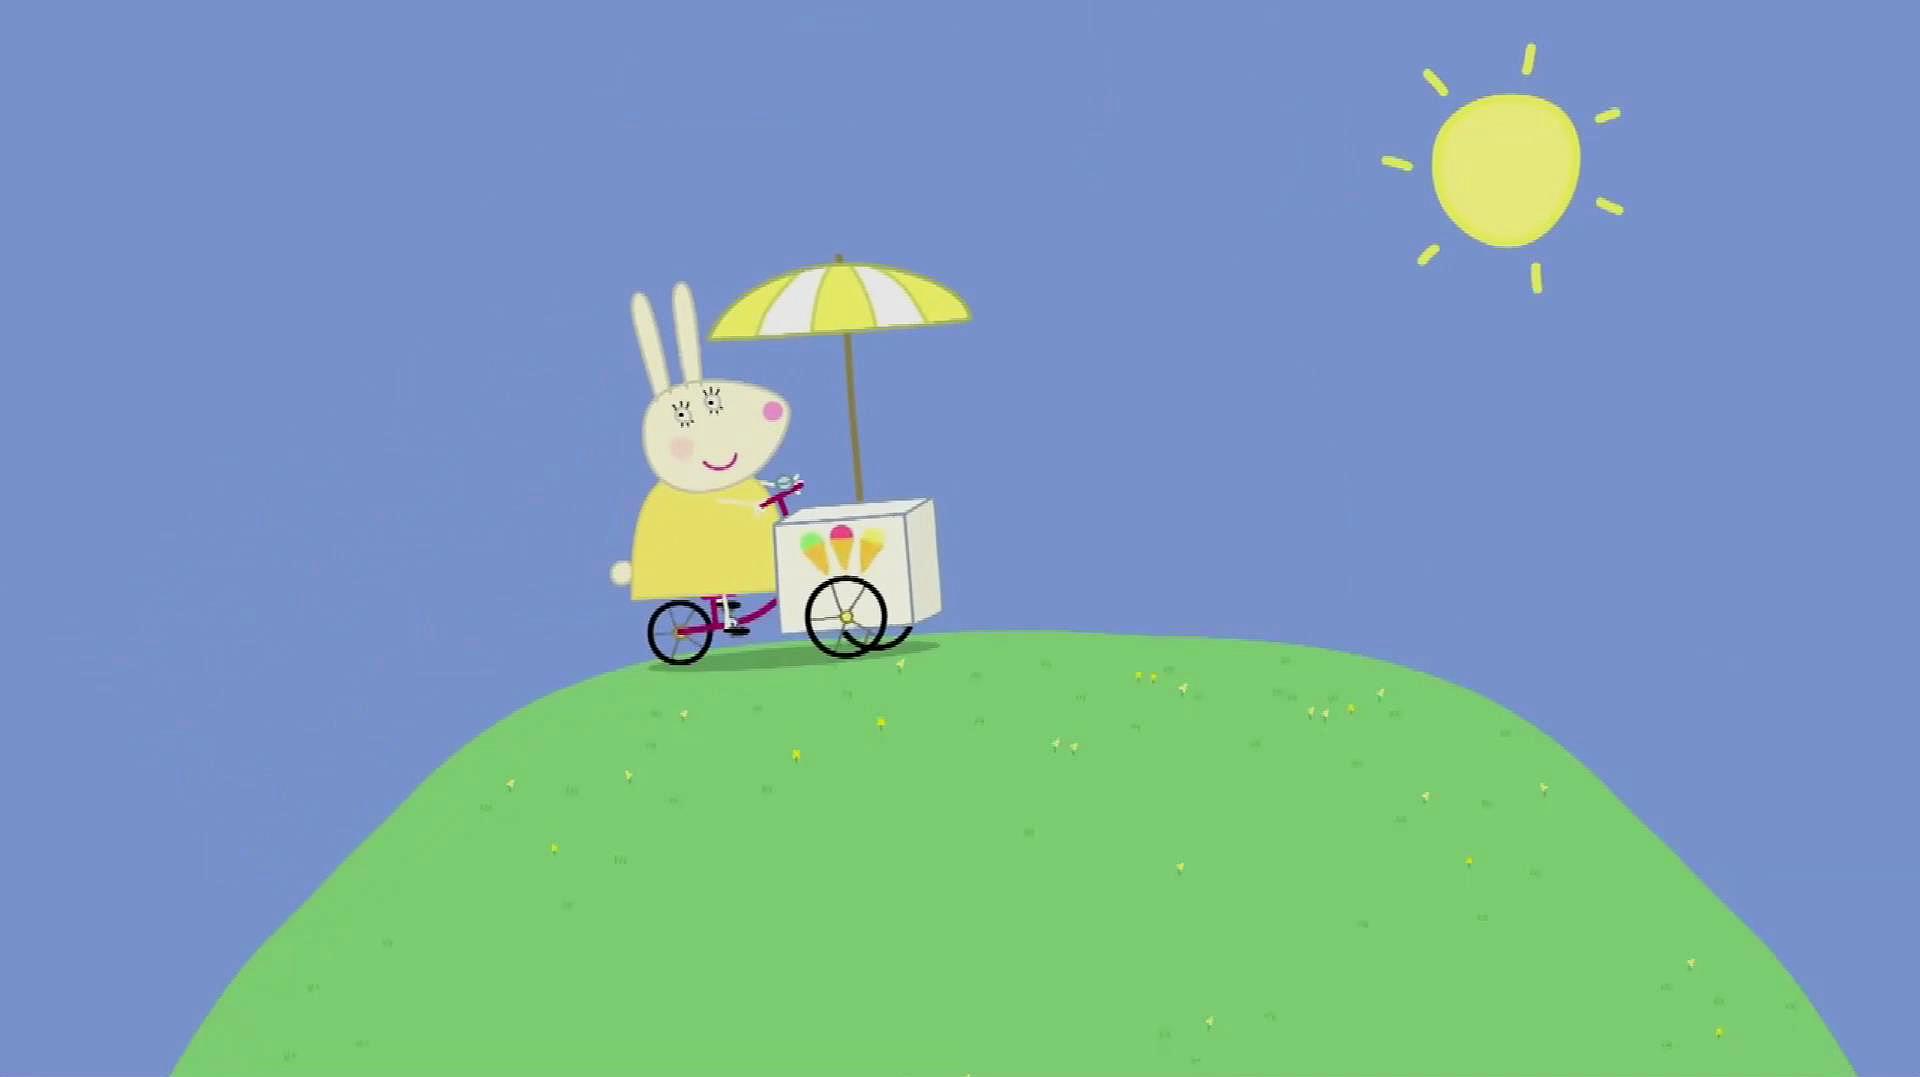 小猪佩奇简笔画:兔子小姐卖冰淇淋